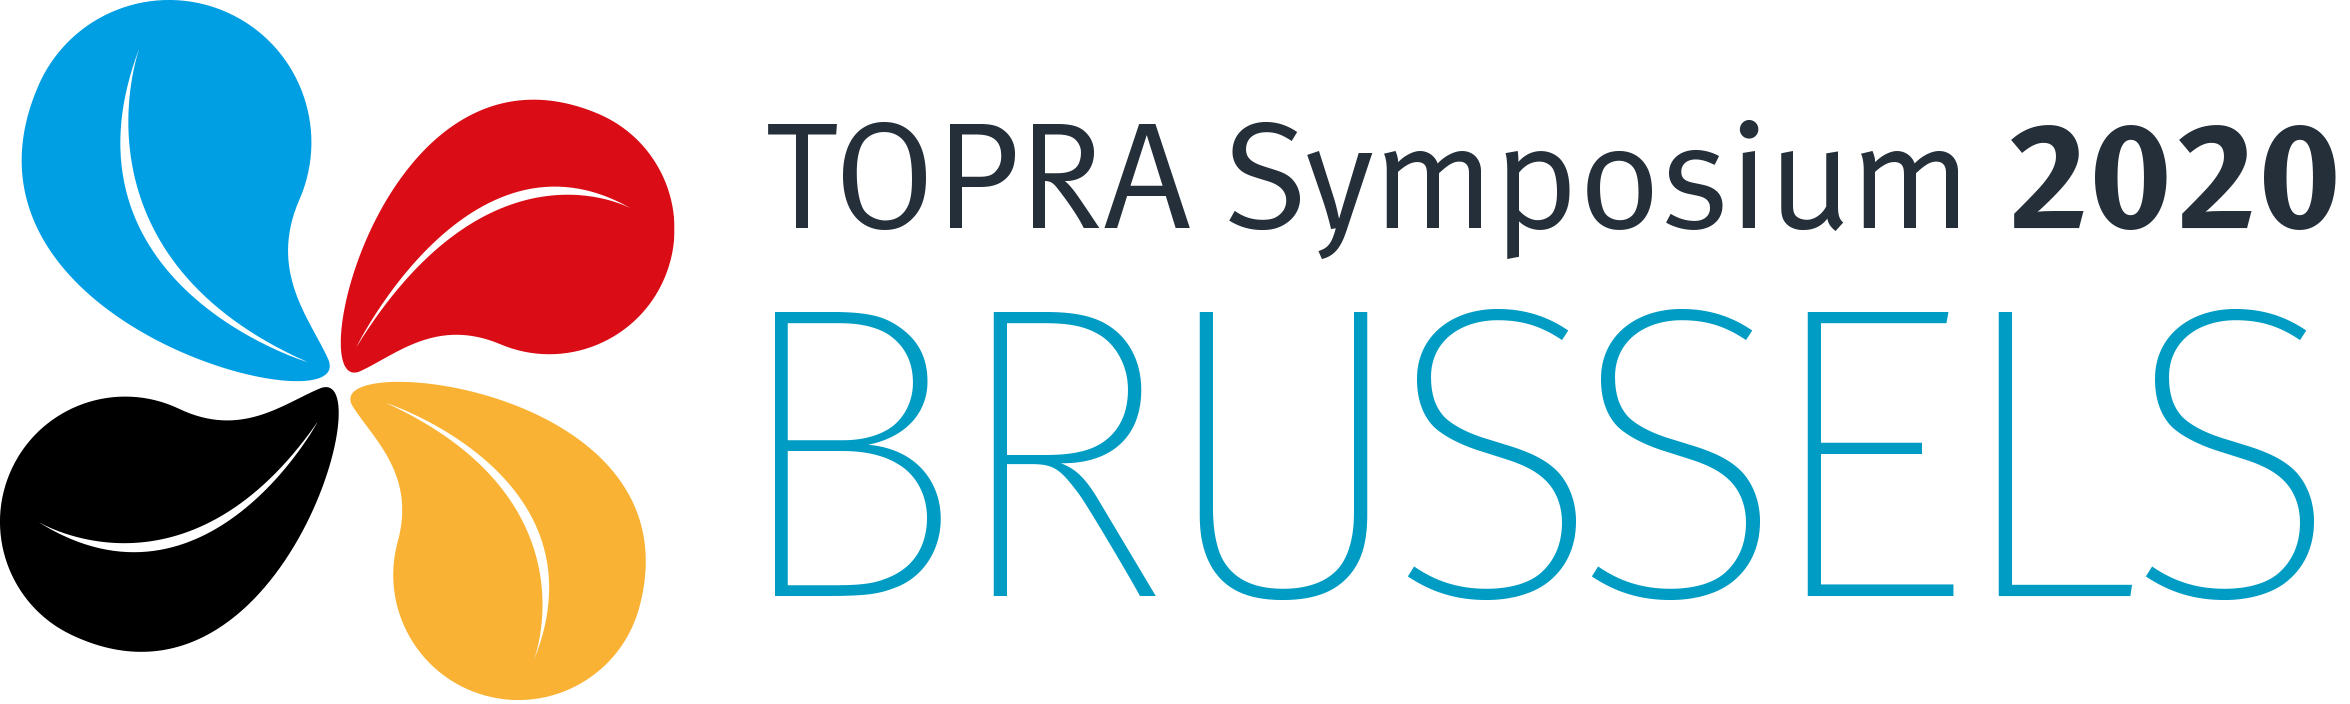 Symposium 2020 logo